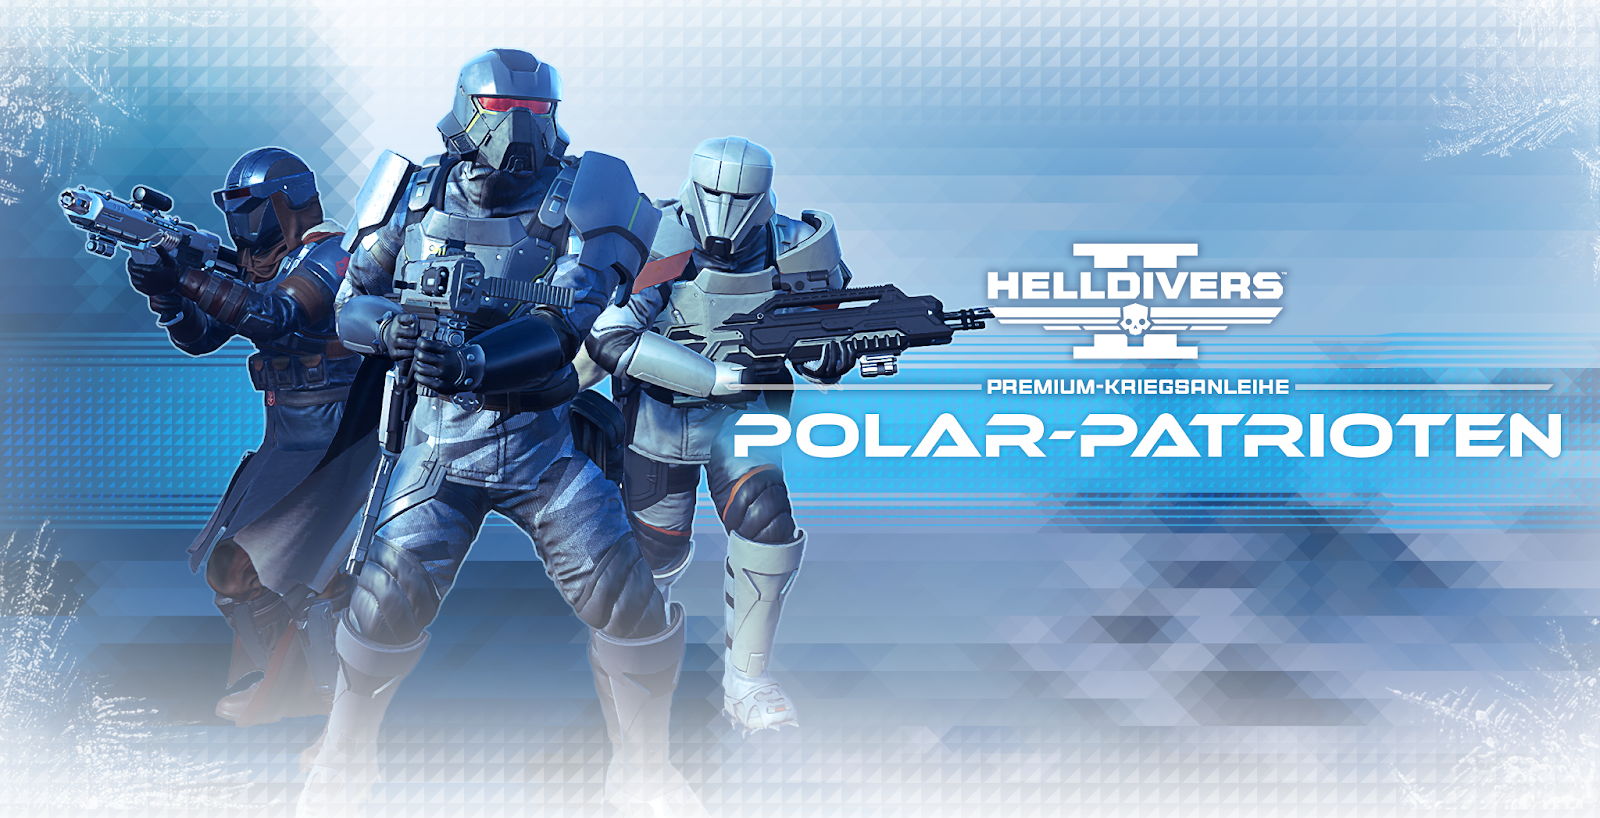 Helldivers 2: Premium-Kriegsanleihe „Polar-Patrioten“ erscheint am 9. Mai